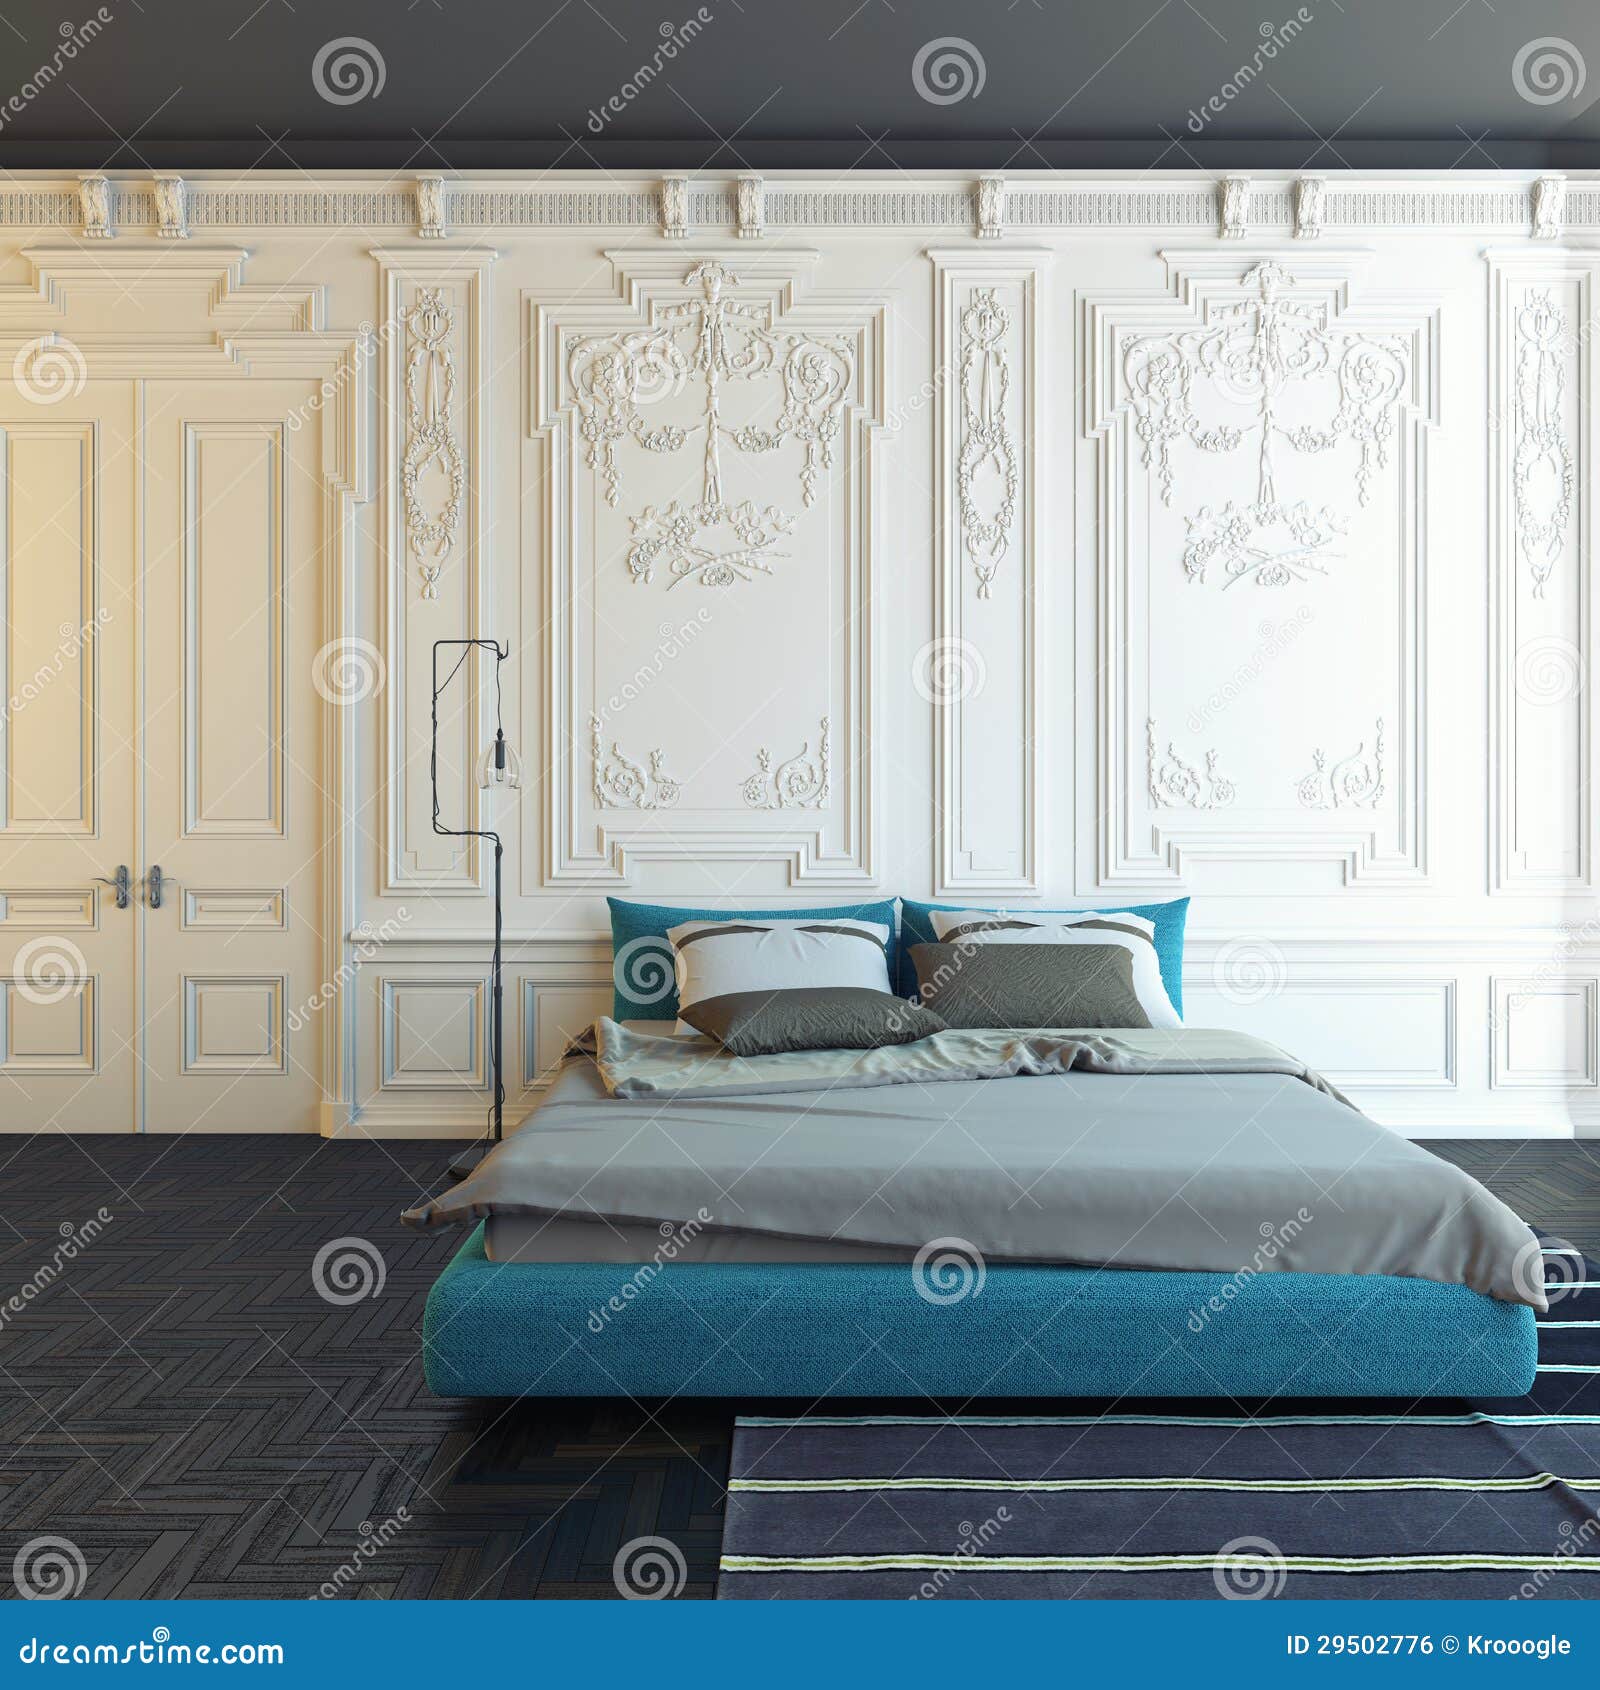 clasic bedroom